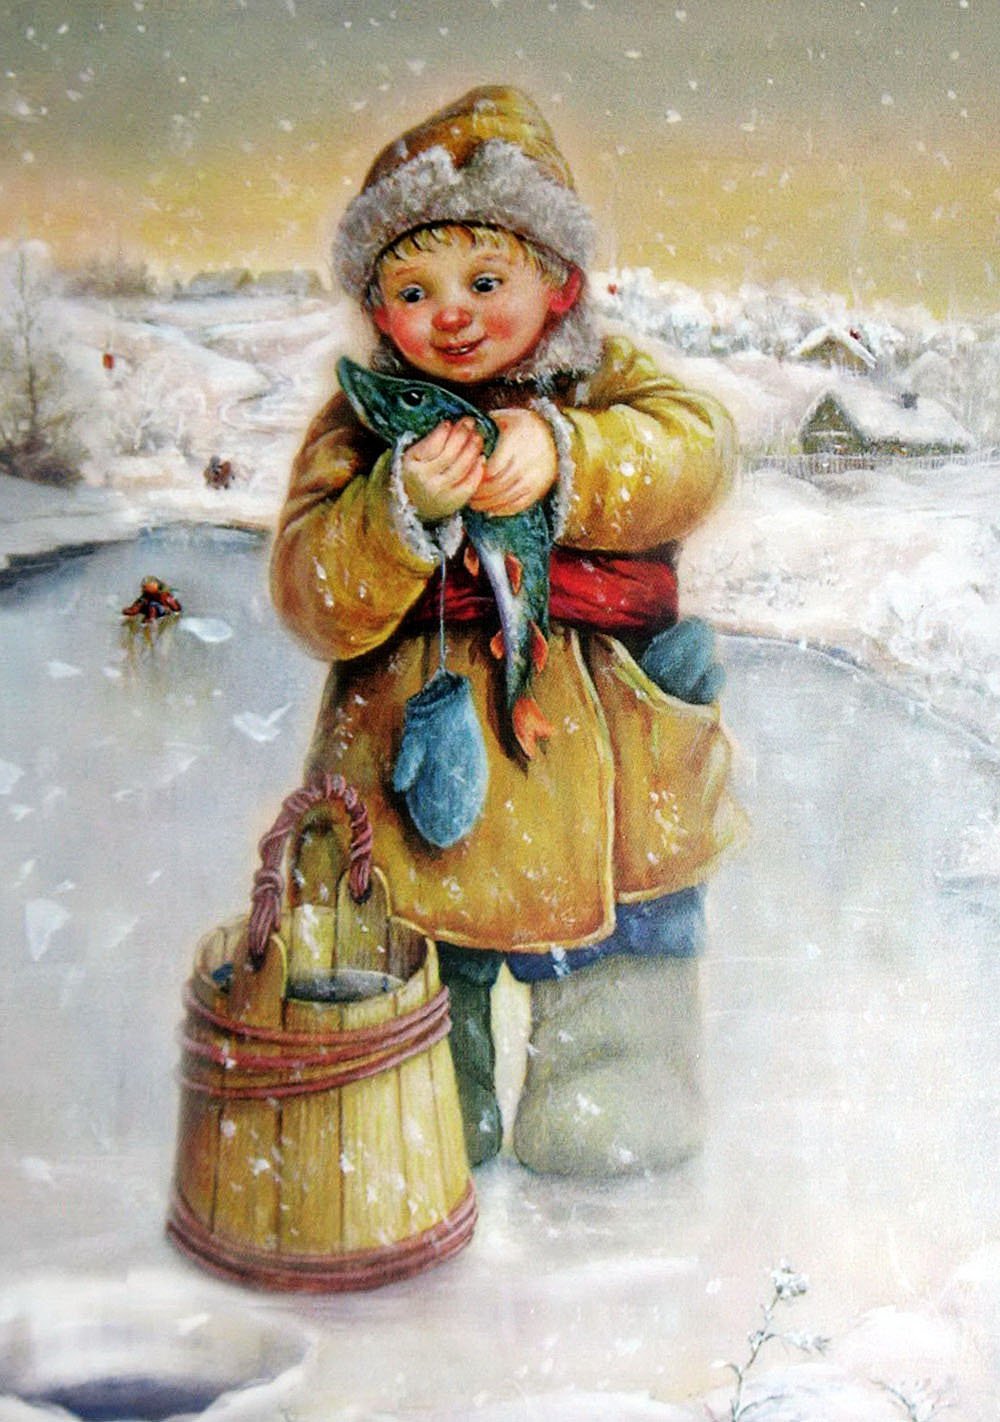 Поздравления с первым днем зимы: красивые пожелания и открытки